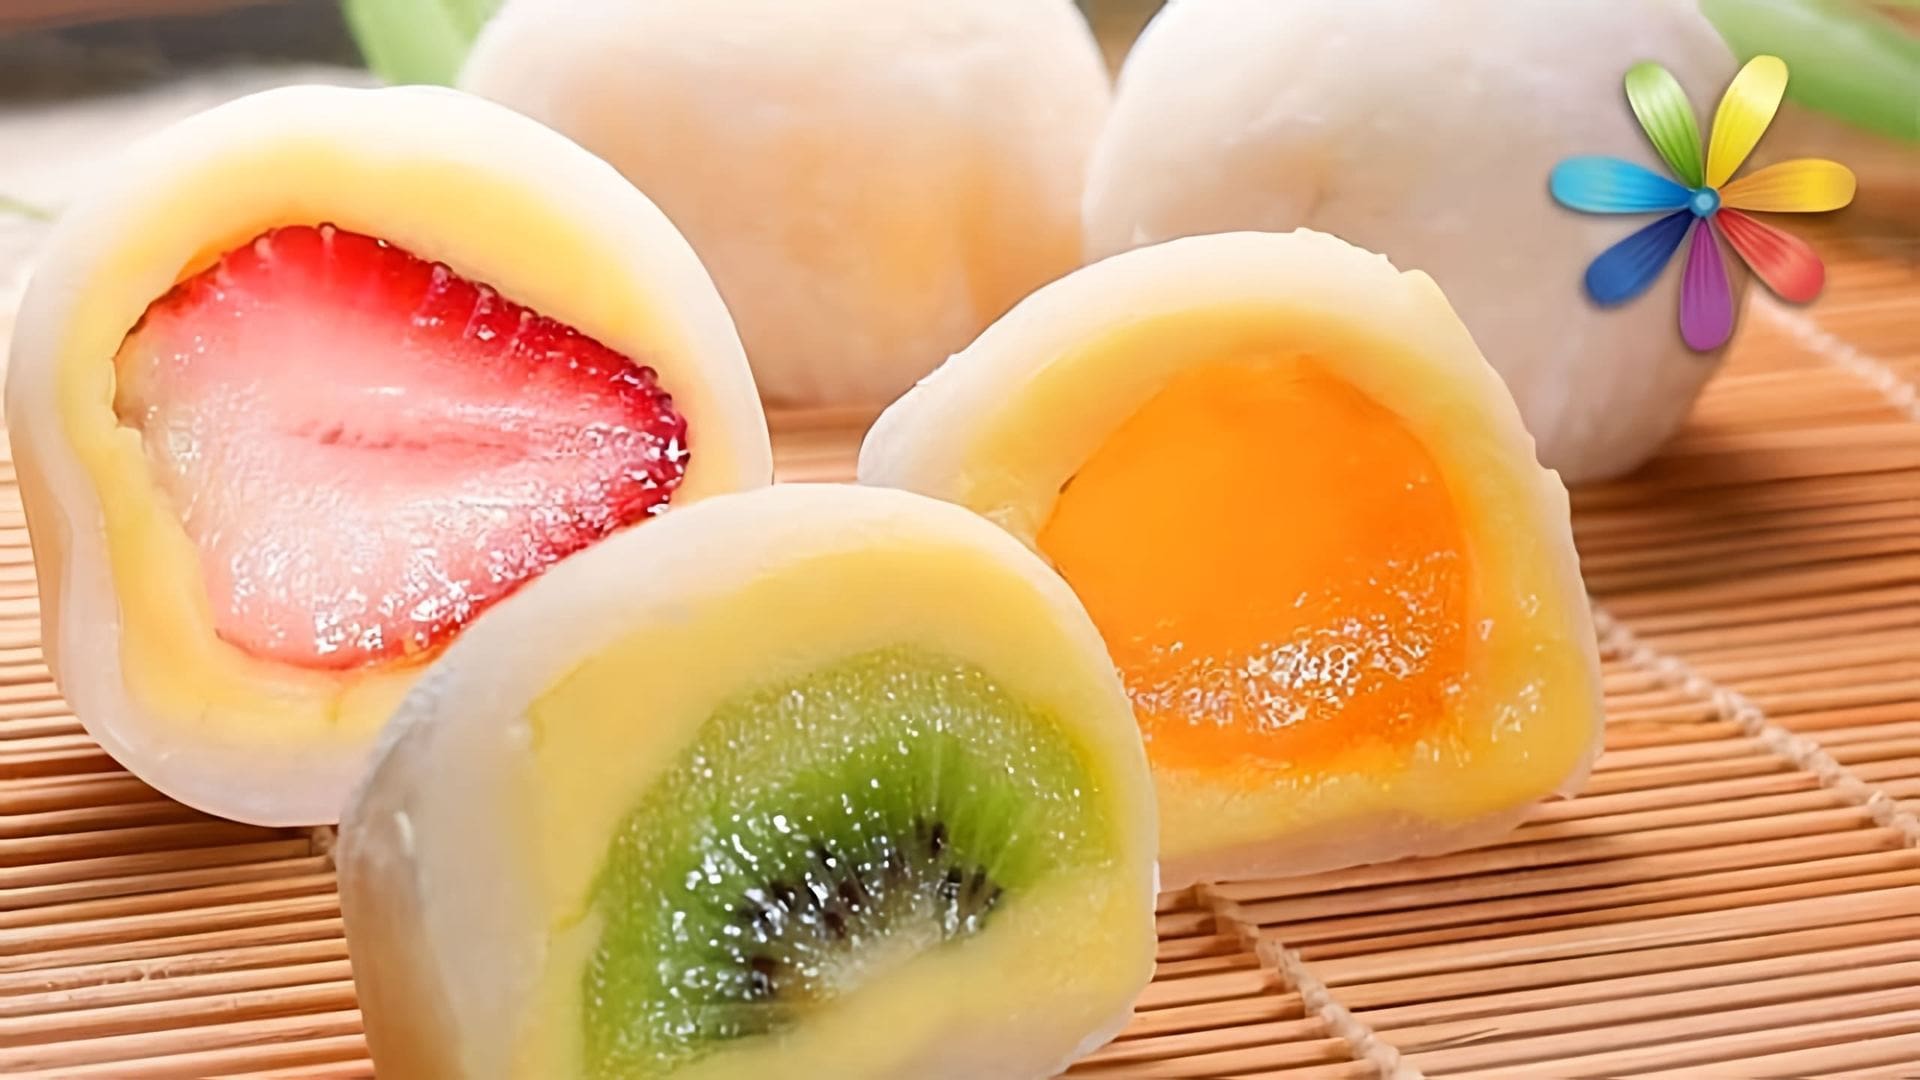 В этом видео кондитер Алисе Соломина рассказывает о японском десерте моти (мочи), который можно приготовить дома